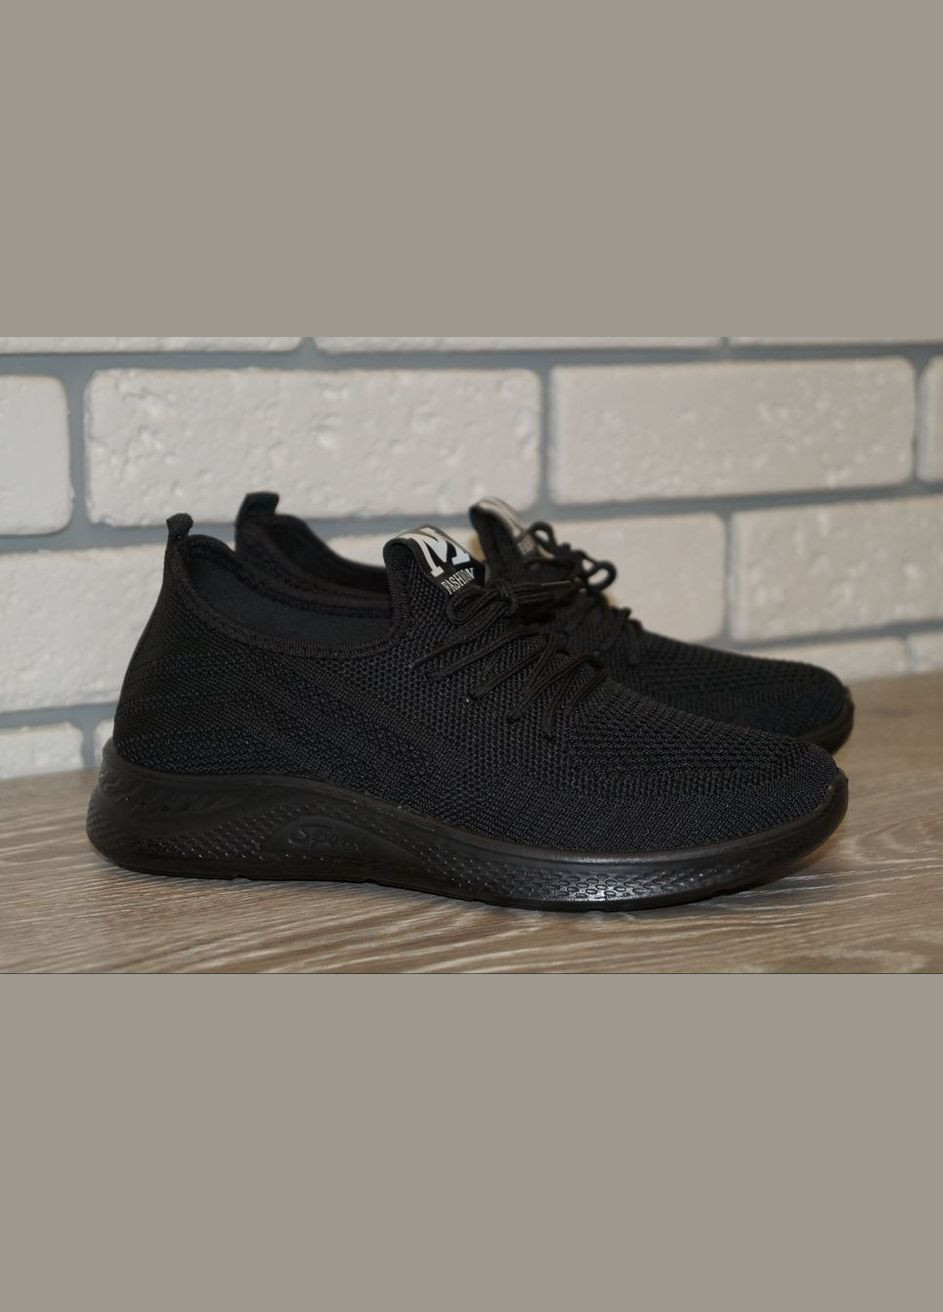 Черные демисезонные кроссовки текстильные подростковые черные Canoa